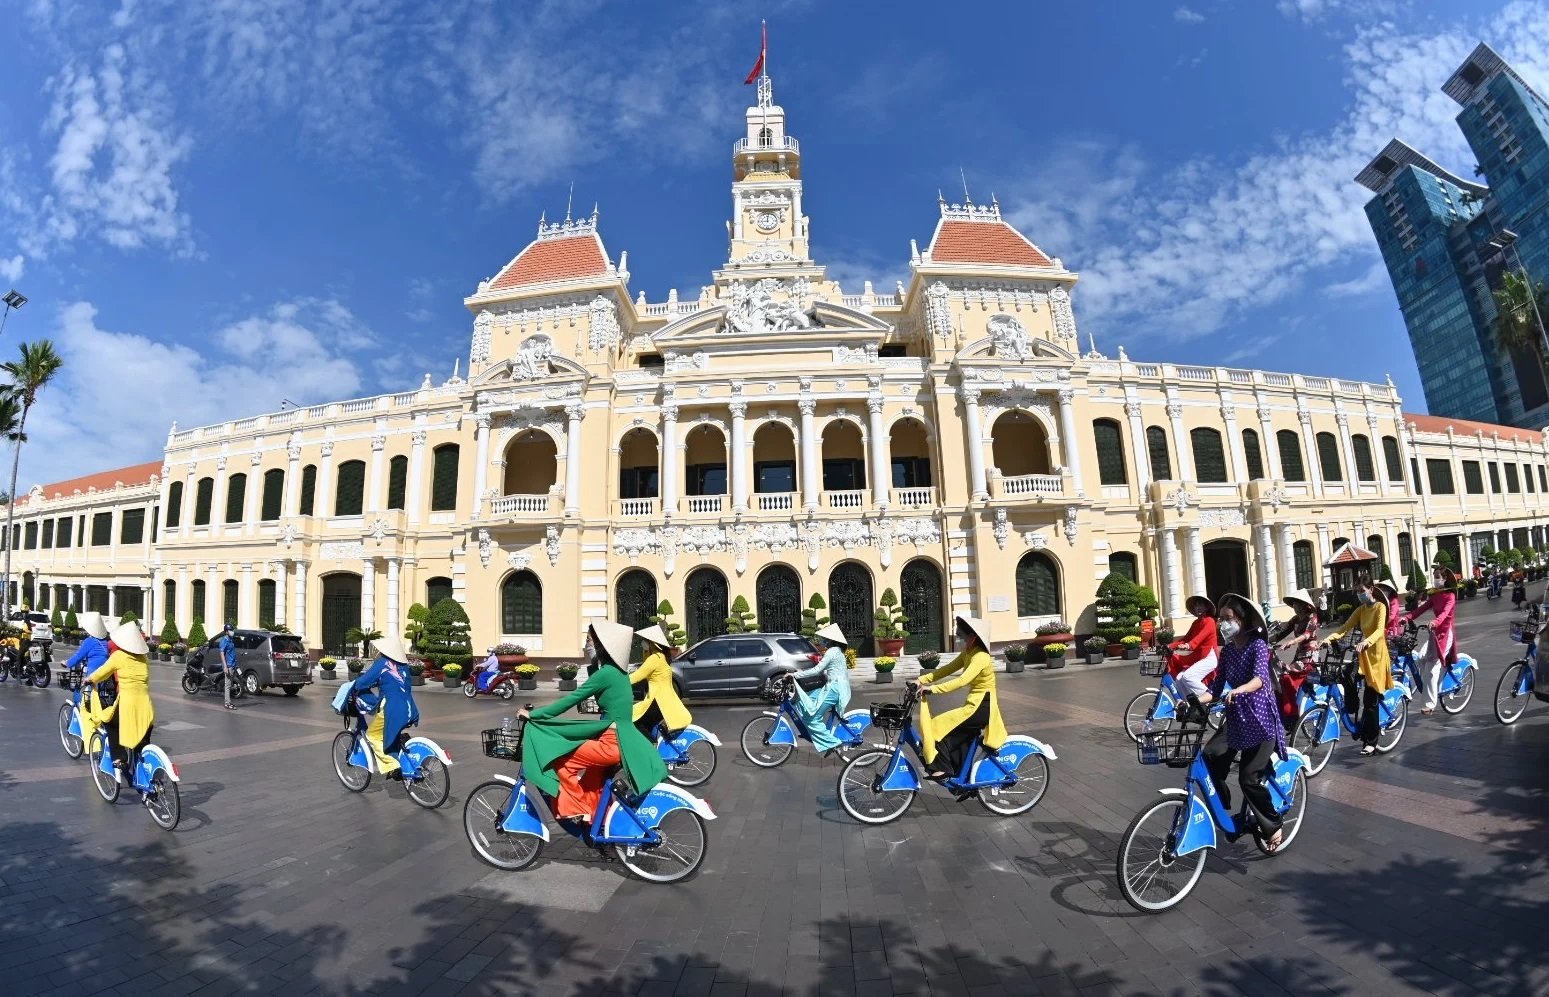 TP Hồ Chí Minh có nhiều sản phẩm du lịch đặc trưng để thu hút du khách trong và ngoài nước. Ảnh minh họa: Hoàng Tuyết/TTXVN